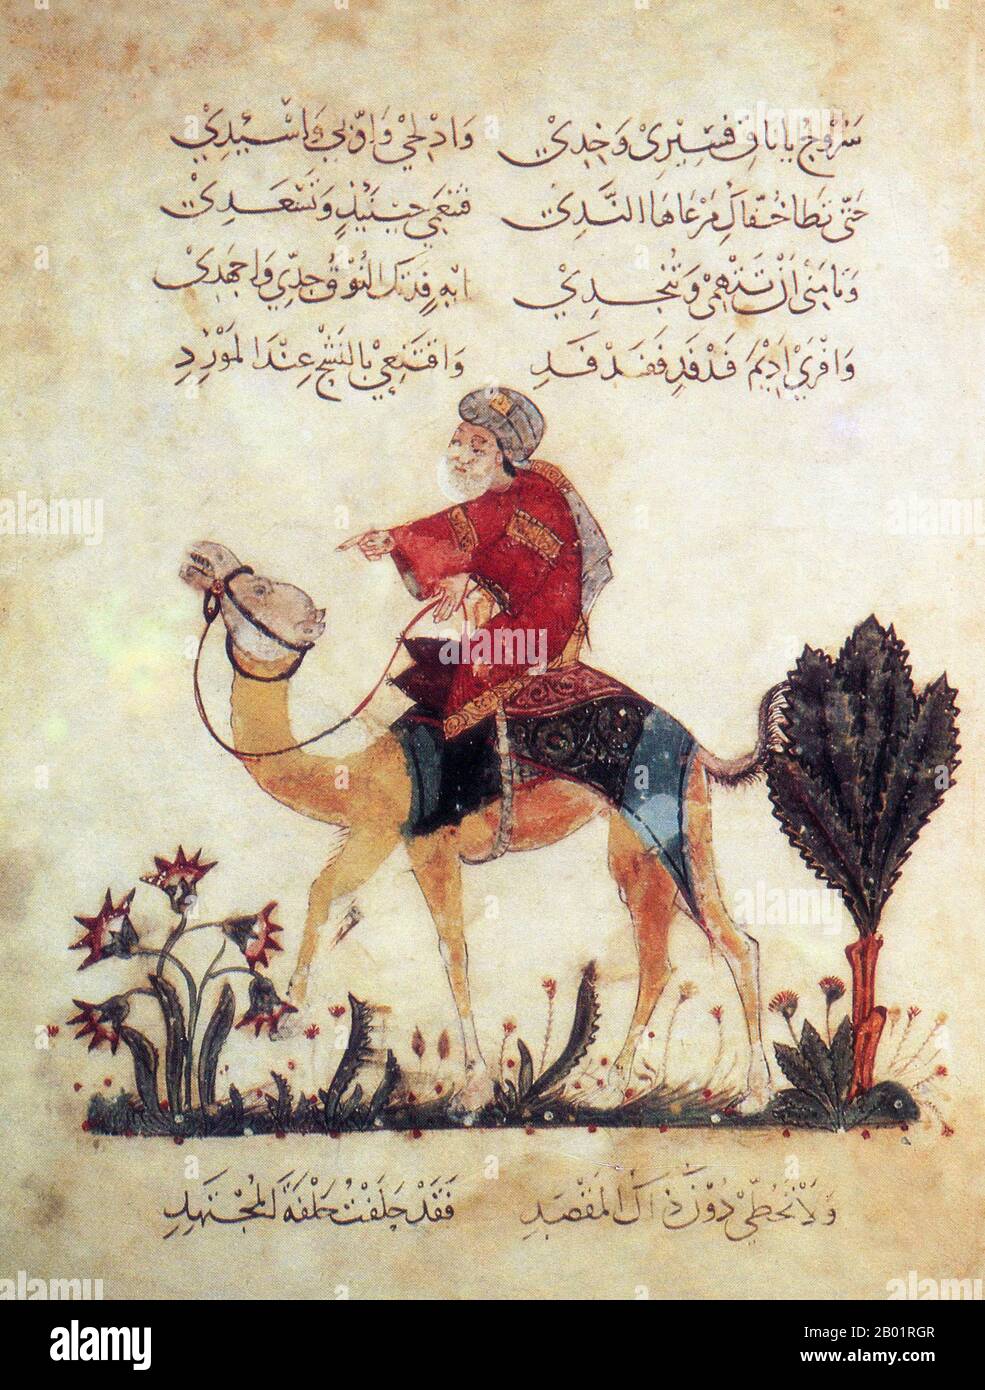 Iraq: Un uomo che cavalca a dorso di cammello. Pittura in miniatura di Yahya ibn Mahmud al-Wasiti, 1237 d.C. Yahyâ ibn Mahmûd al-Wâsitî è stato un artista arabo islamico del XIII secolo. Al-Wasiti è nato a Wasit, nel sud dell'Iraq. Era noto per le sue illustrazioni del Maqam di al-Hariri. I Maqāma (letteralmente "assemblee") sono un genere letterario arabo (originariamente) di prosa rimata con intervalli di poesia in cui la stravaganza retorica è evidente. Si dice che l'autore del X secolo Badī' al-Zaman al-Hamadhāni abbia inventato la forma, che fu estesa da al-Hariri di Bassora nel secolo successivo. Foto Stock